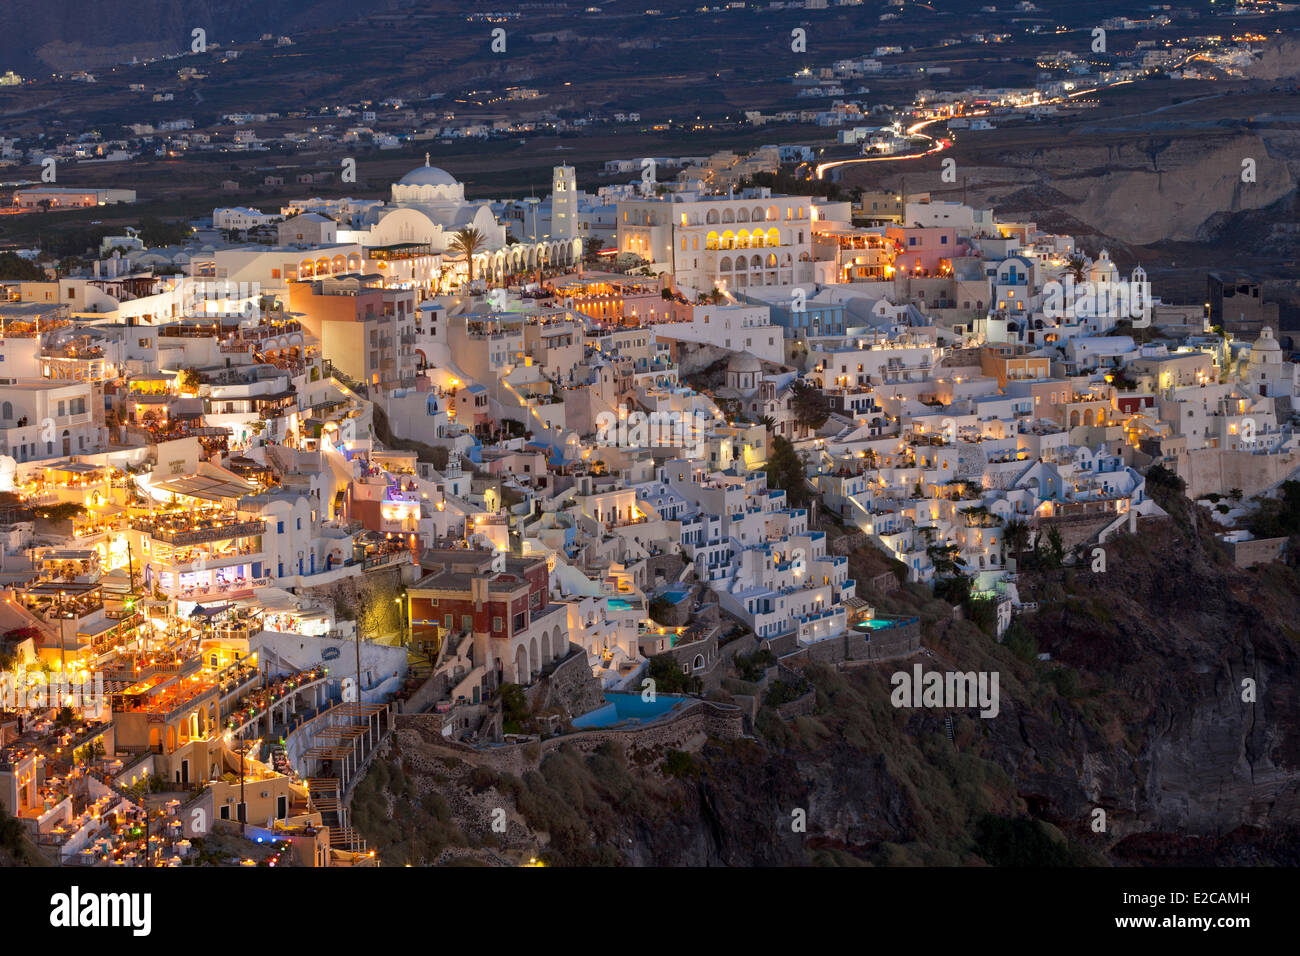 Griechenland, Cyclades, Ägäis, Santorini (Thira oder Thera), das Dorf von Thira Hunged am oberen Rand der caldera Stockfoto